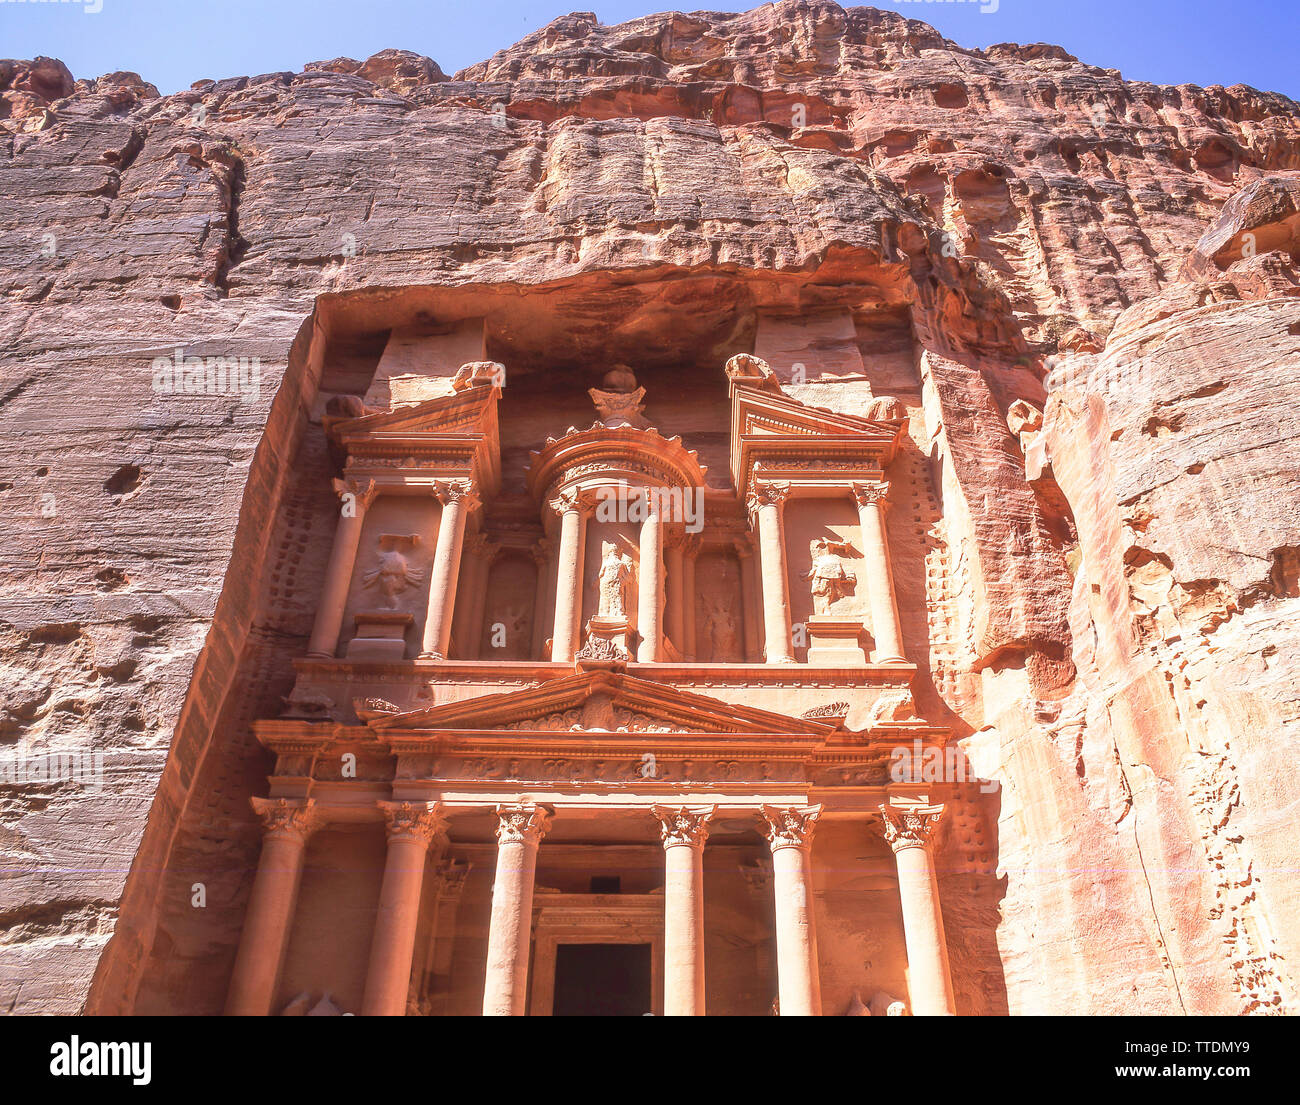 The Treasury (Al Khazneh), Ancient City of Petra, Maan, Kingdom of Jordan Stock Photo